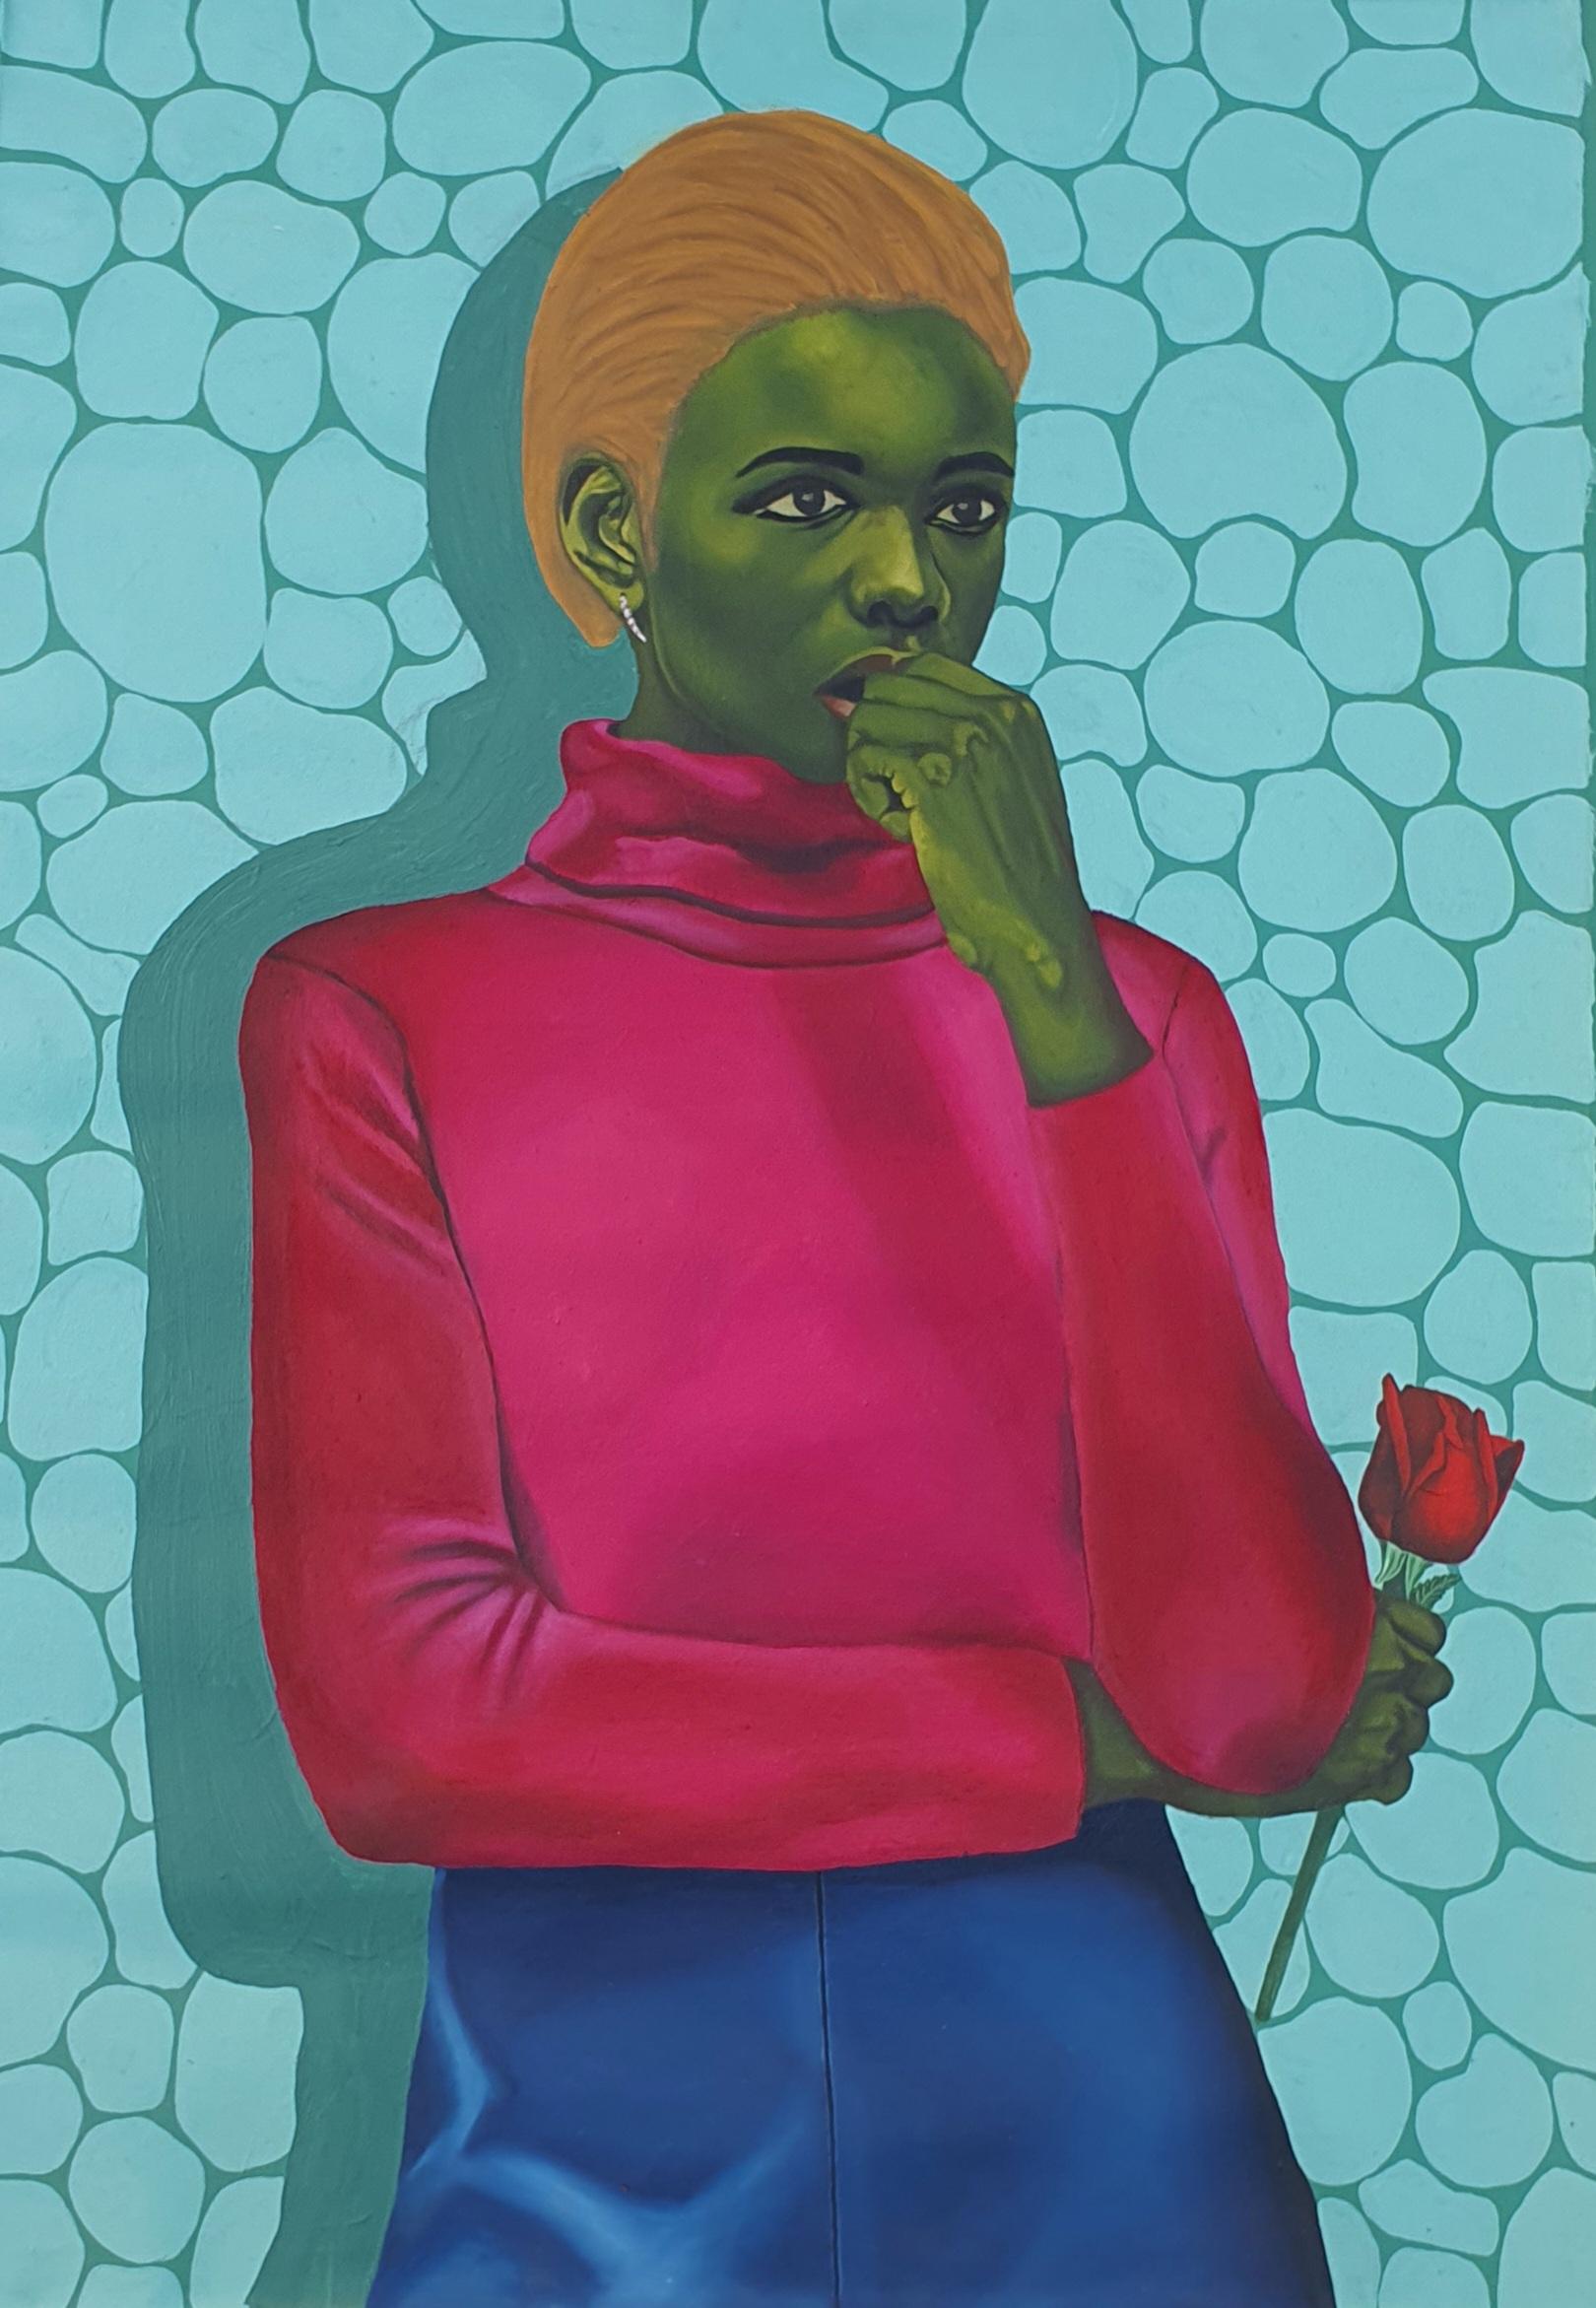 Olajire Olalekan Figurative Painting - Anxiety